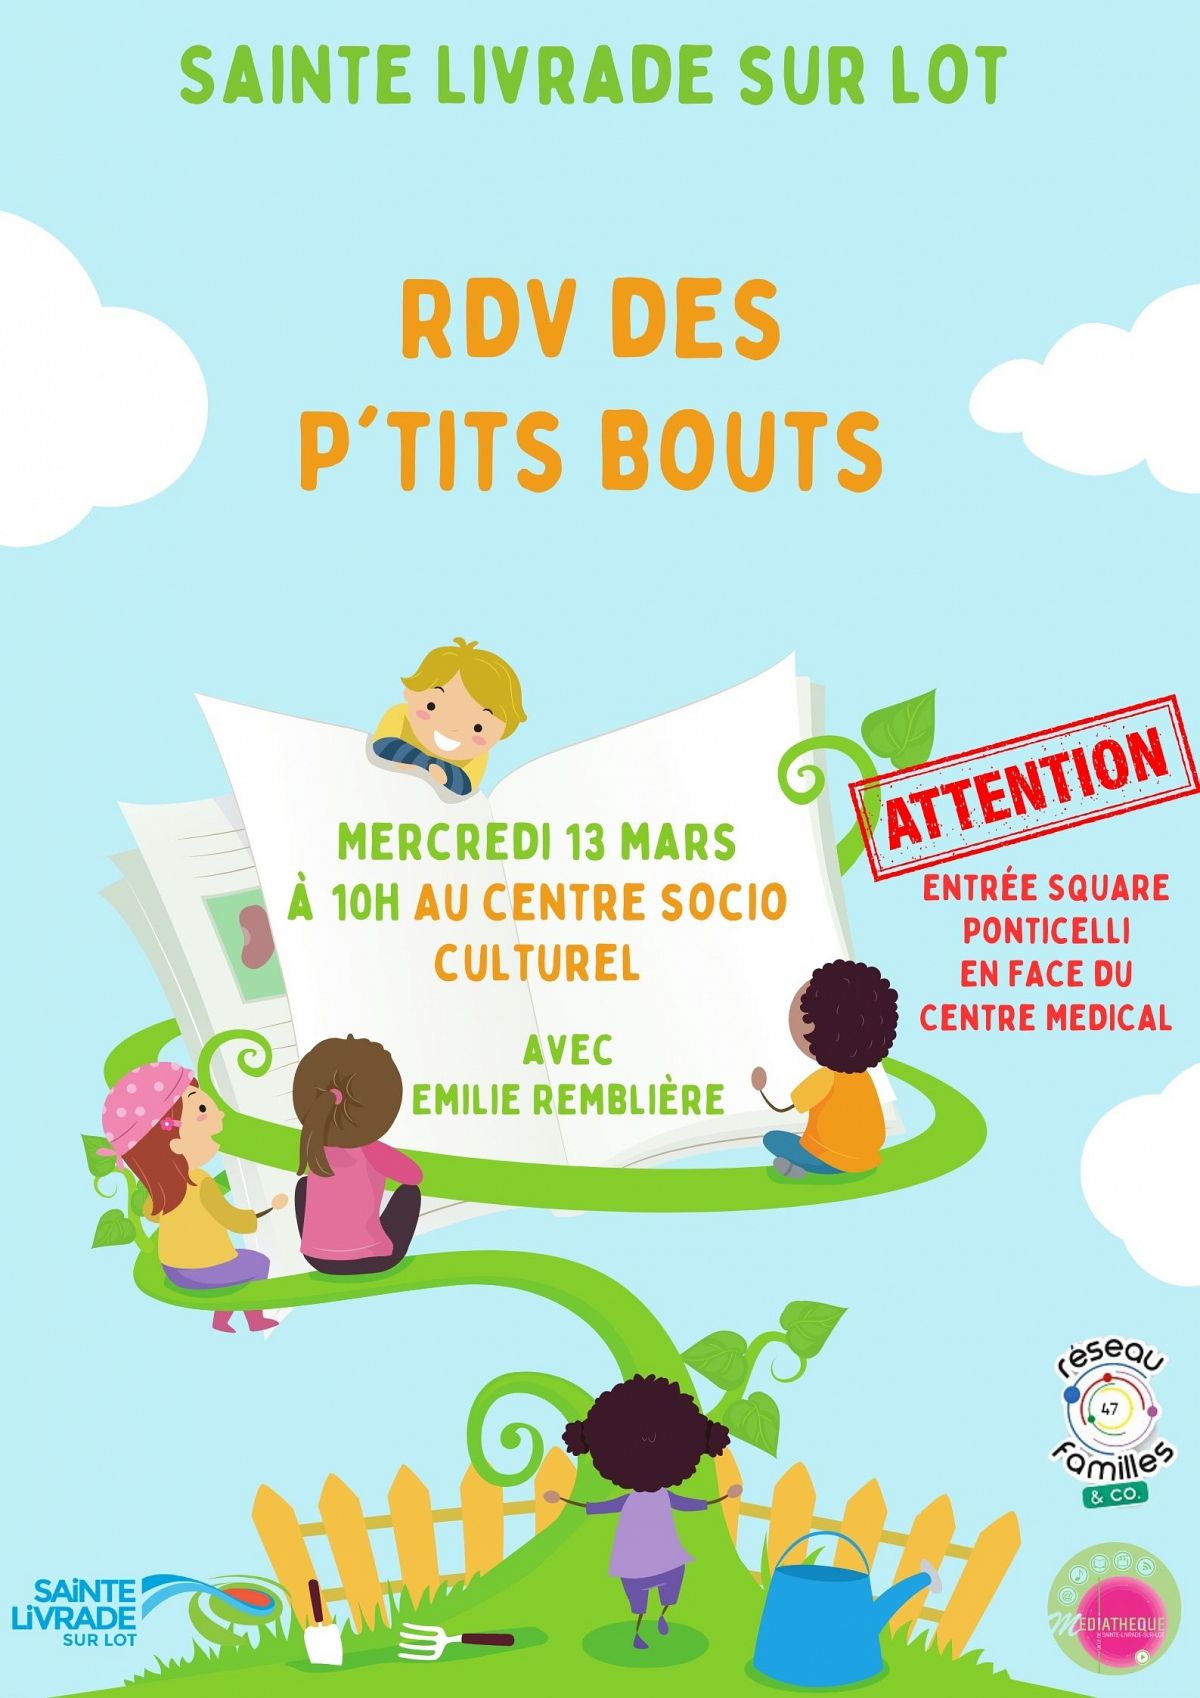 RDV des P'Tits Bouts avec Emilie Remblière mercredi 13 mers à 10h